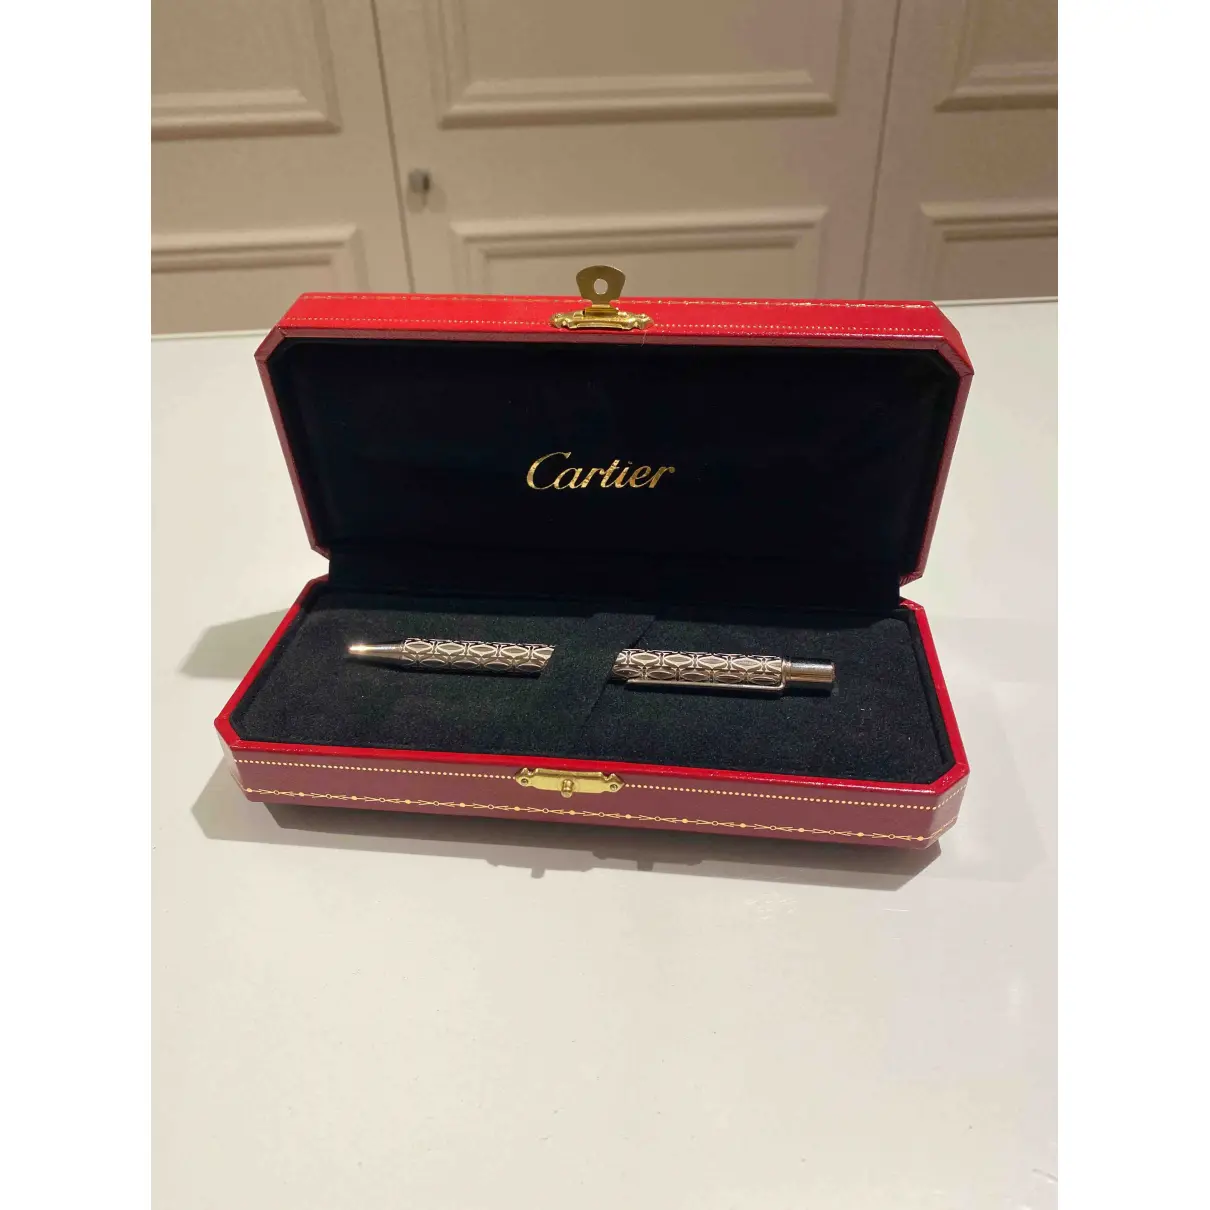 Buy Cartier Pen online